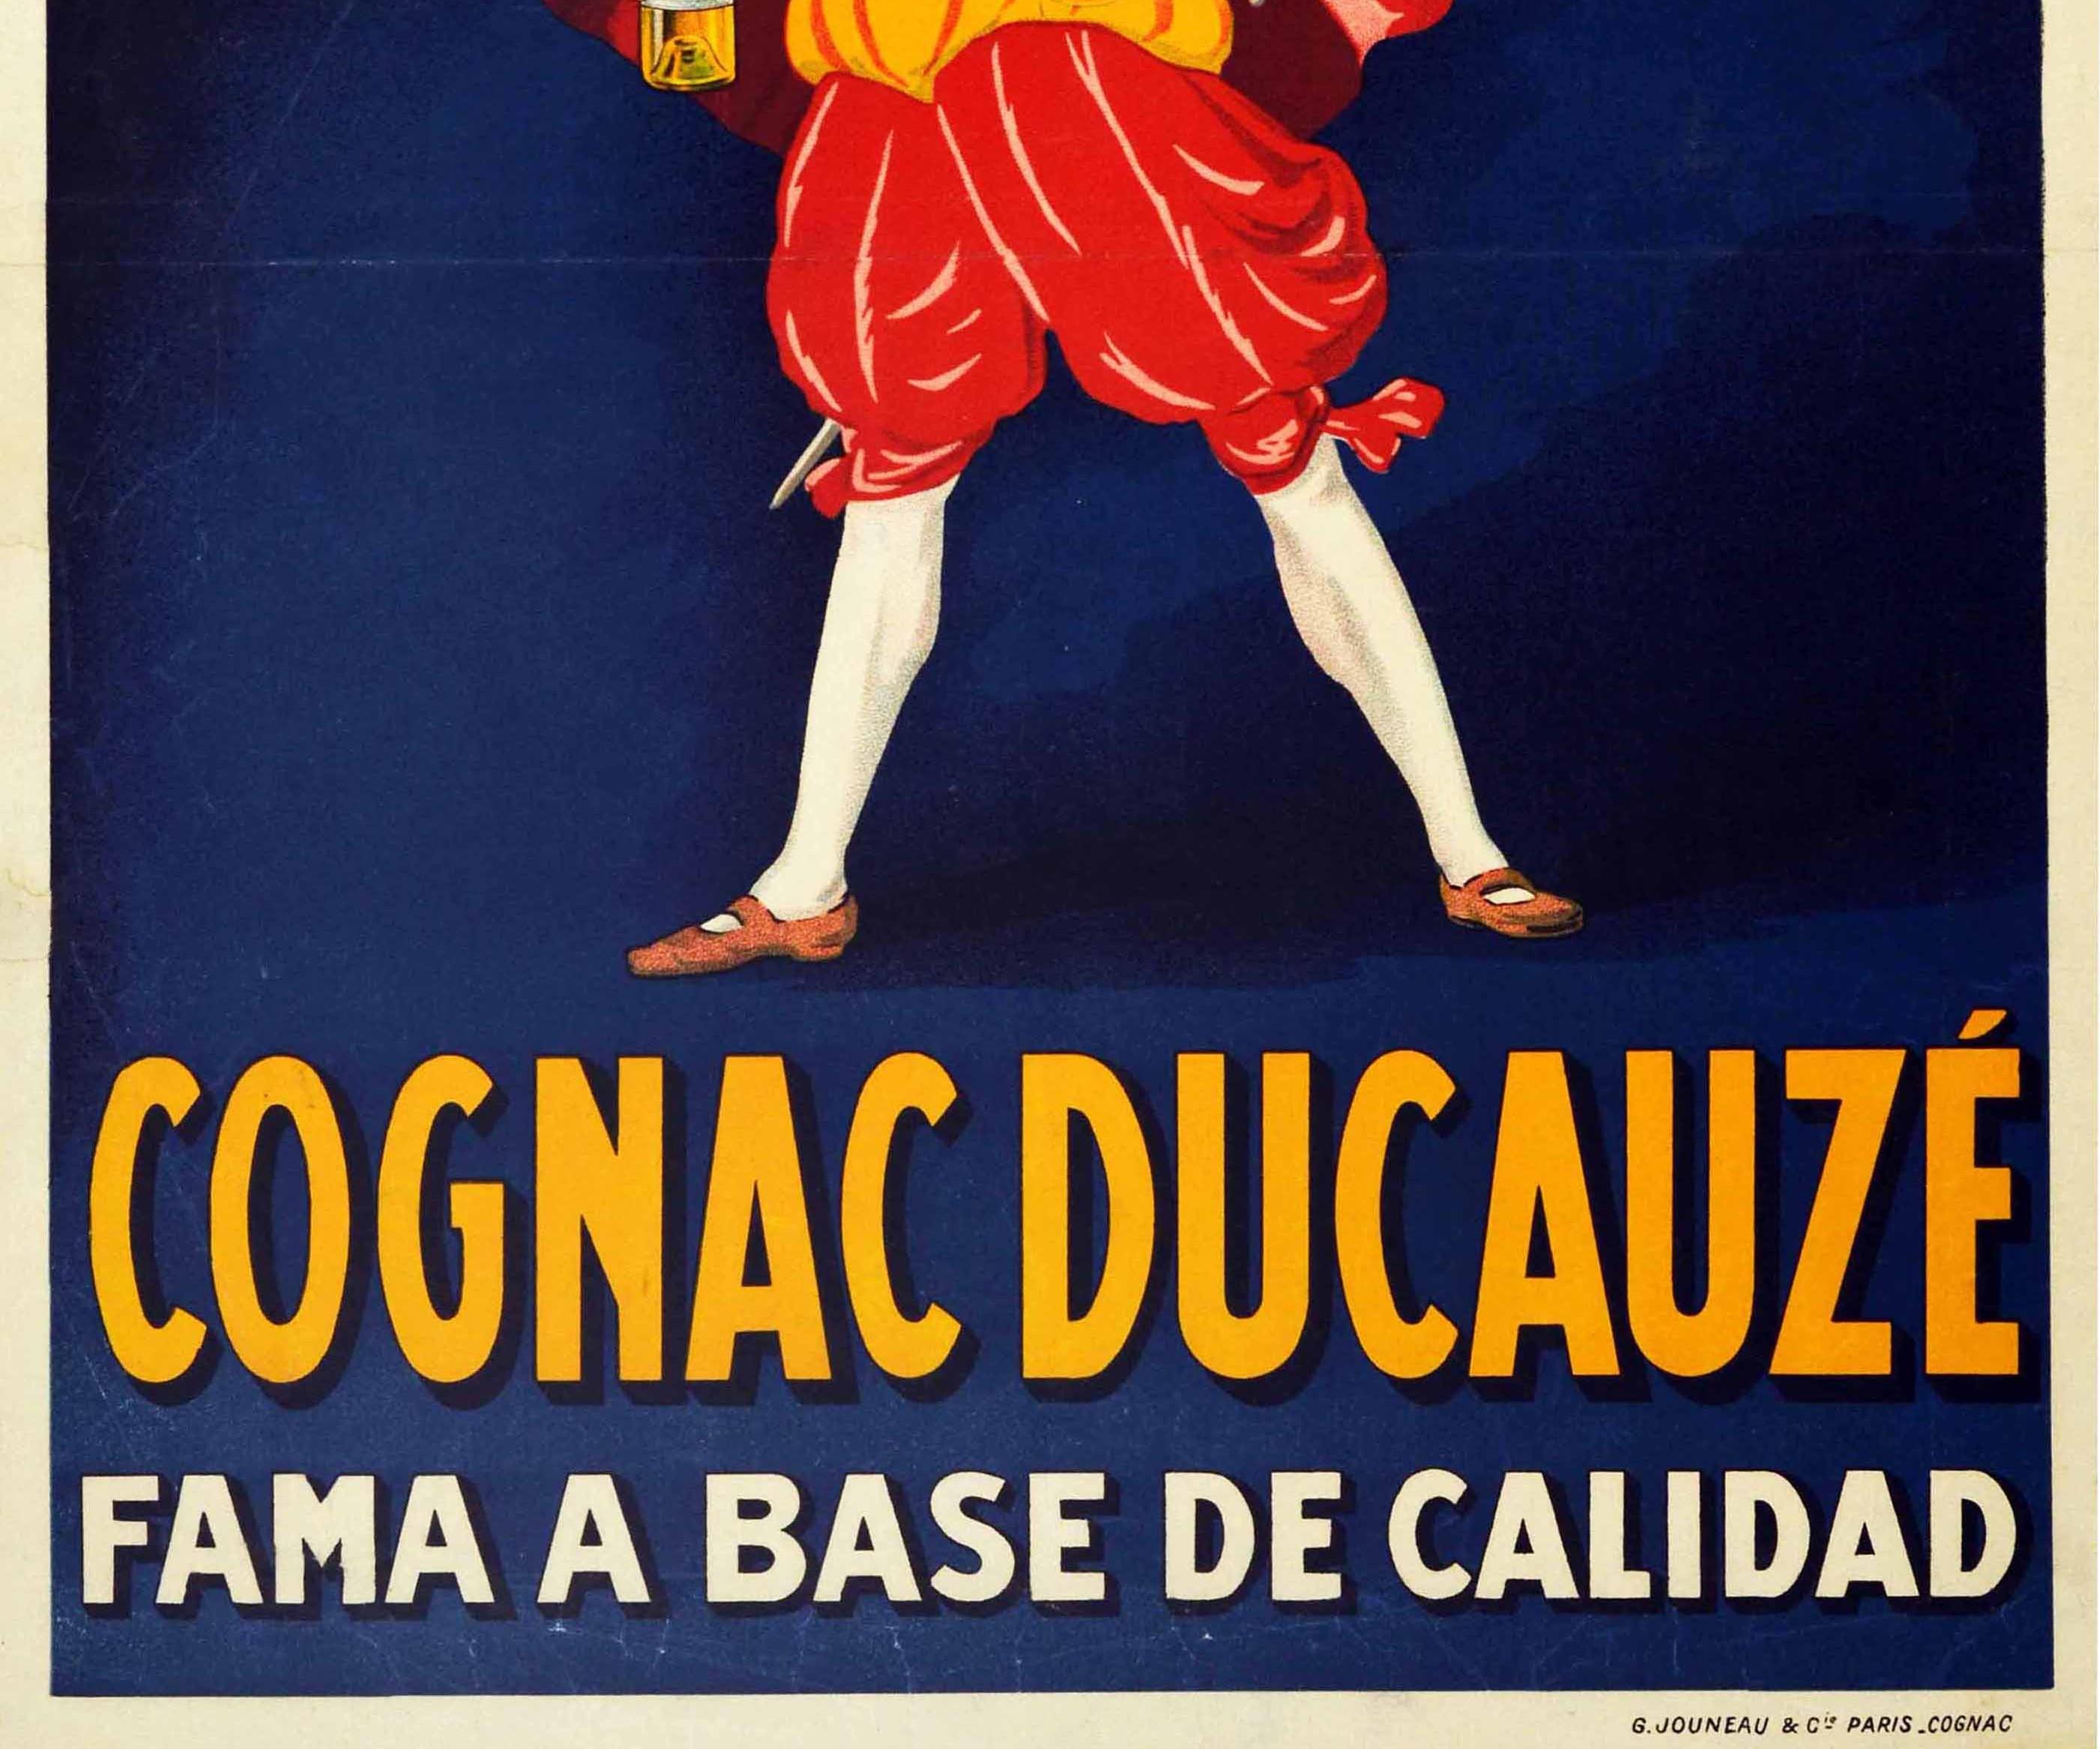 French Original Antique Drink Poster Cognac Ducauze Fama A Base De Calidad Fame Quality For Sale